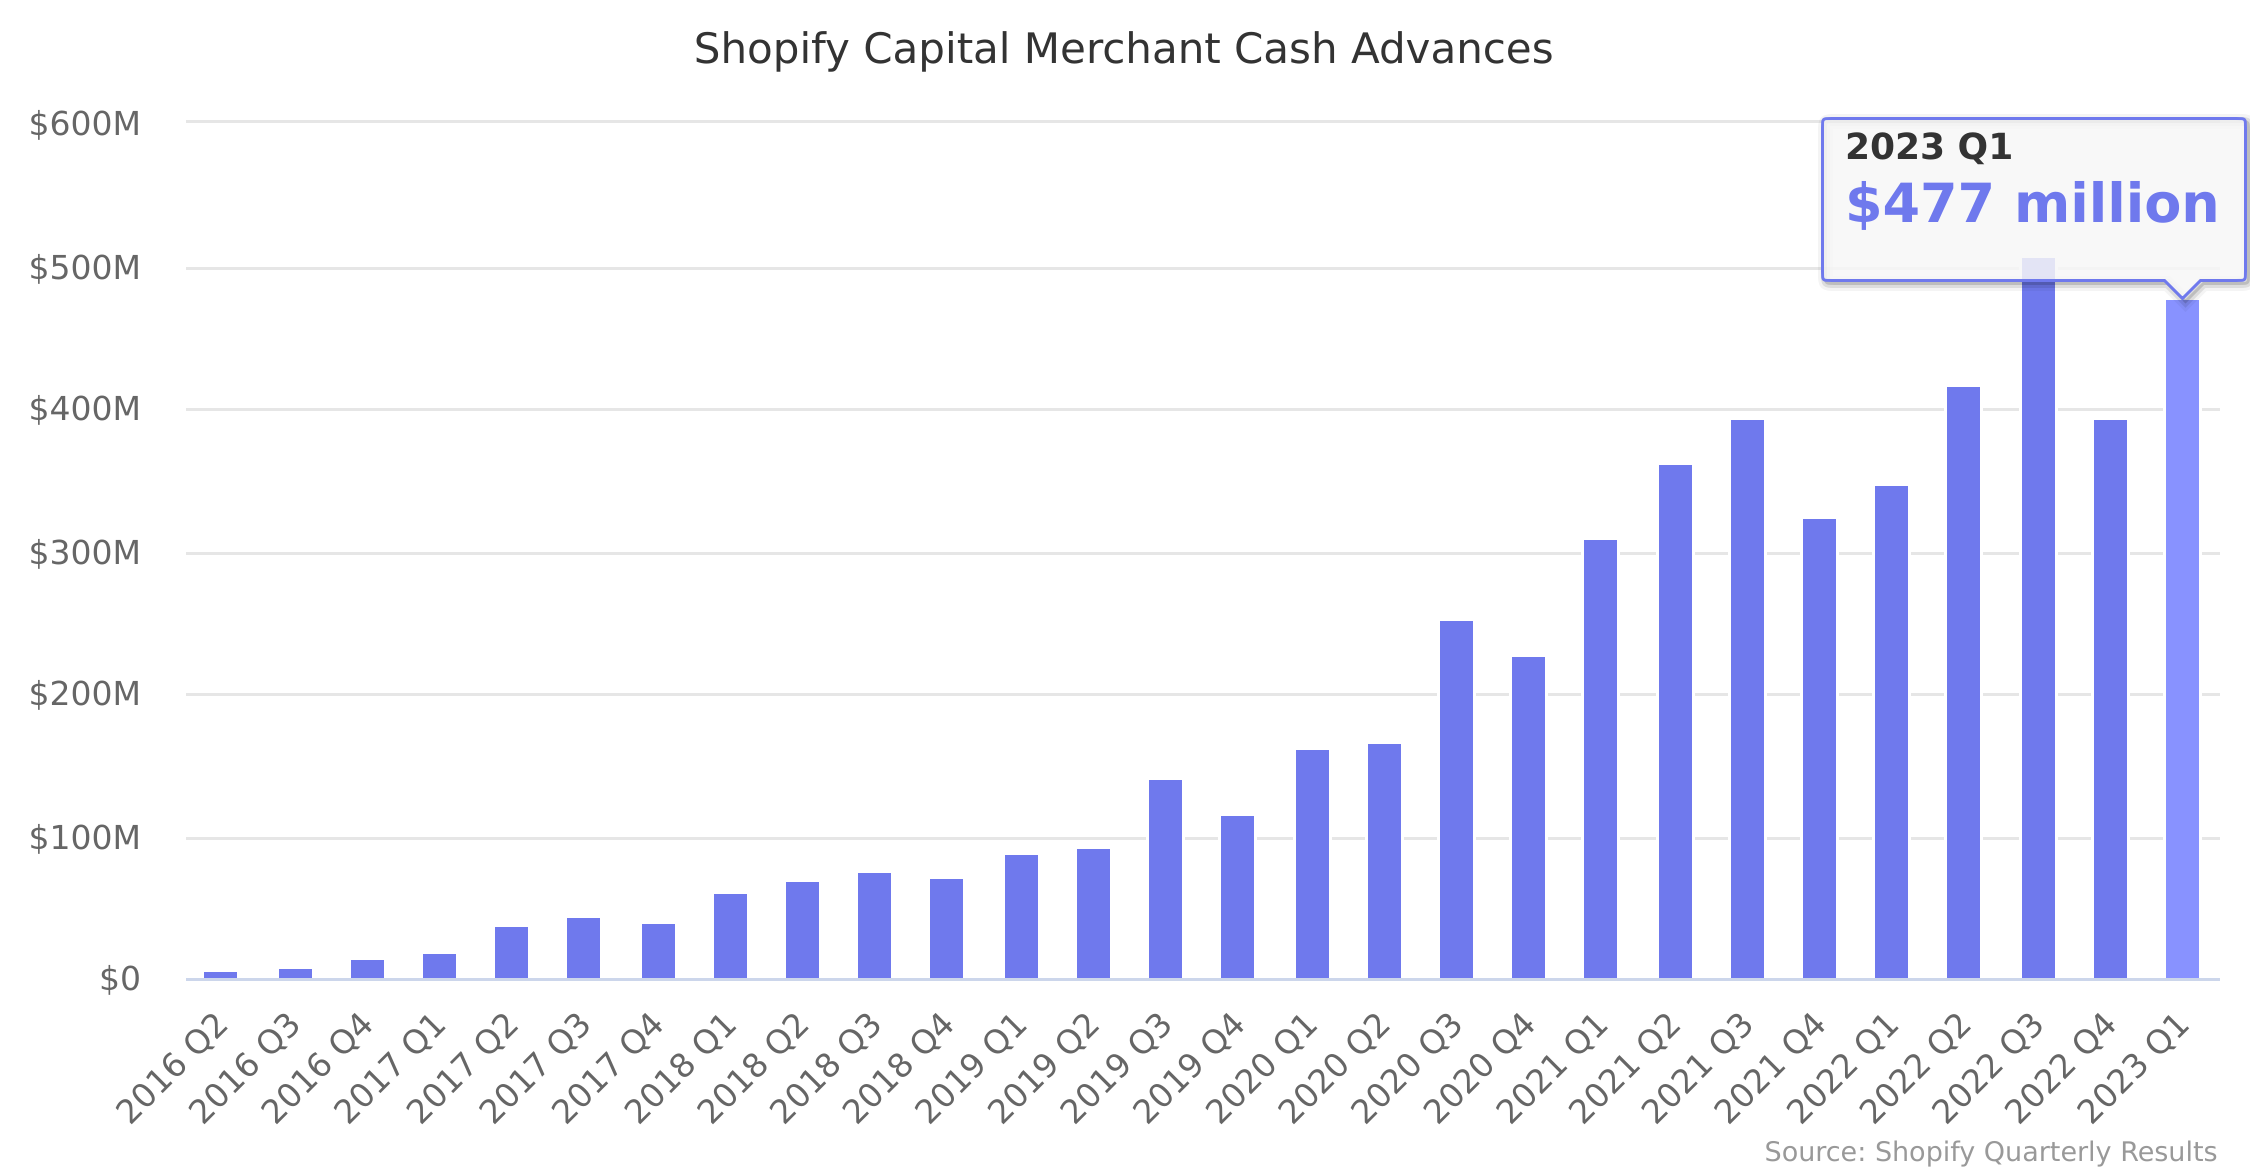 Shopify Capital Merchant Cash Advances